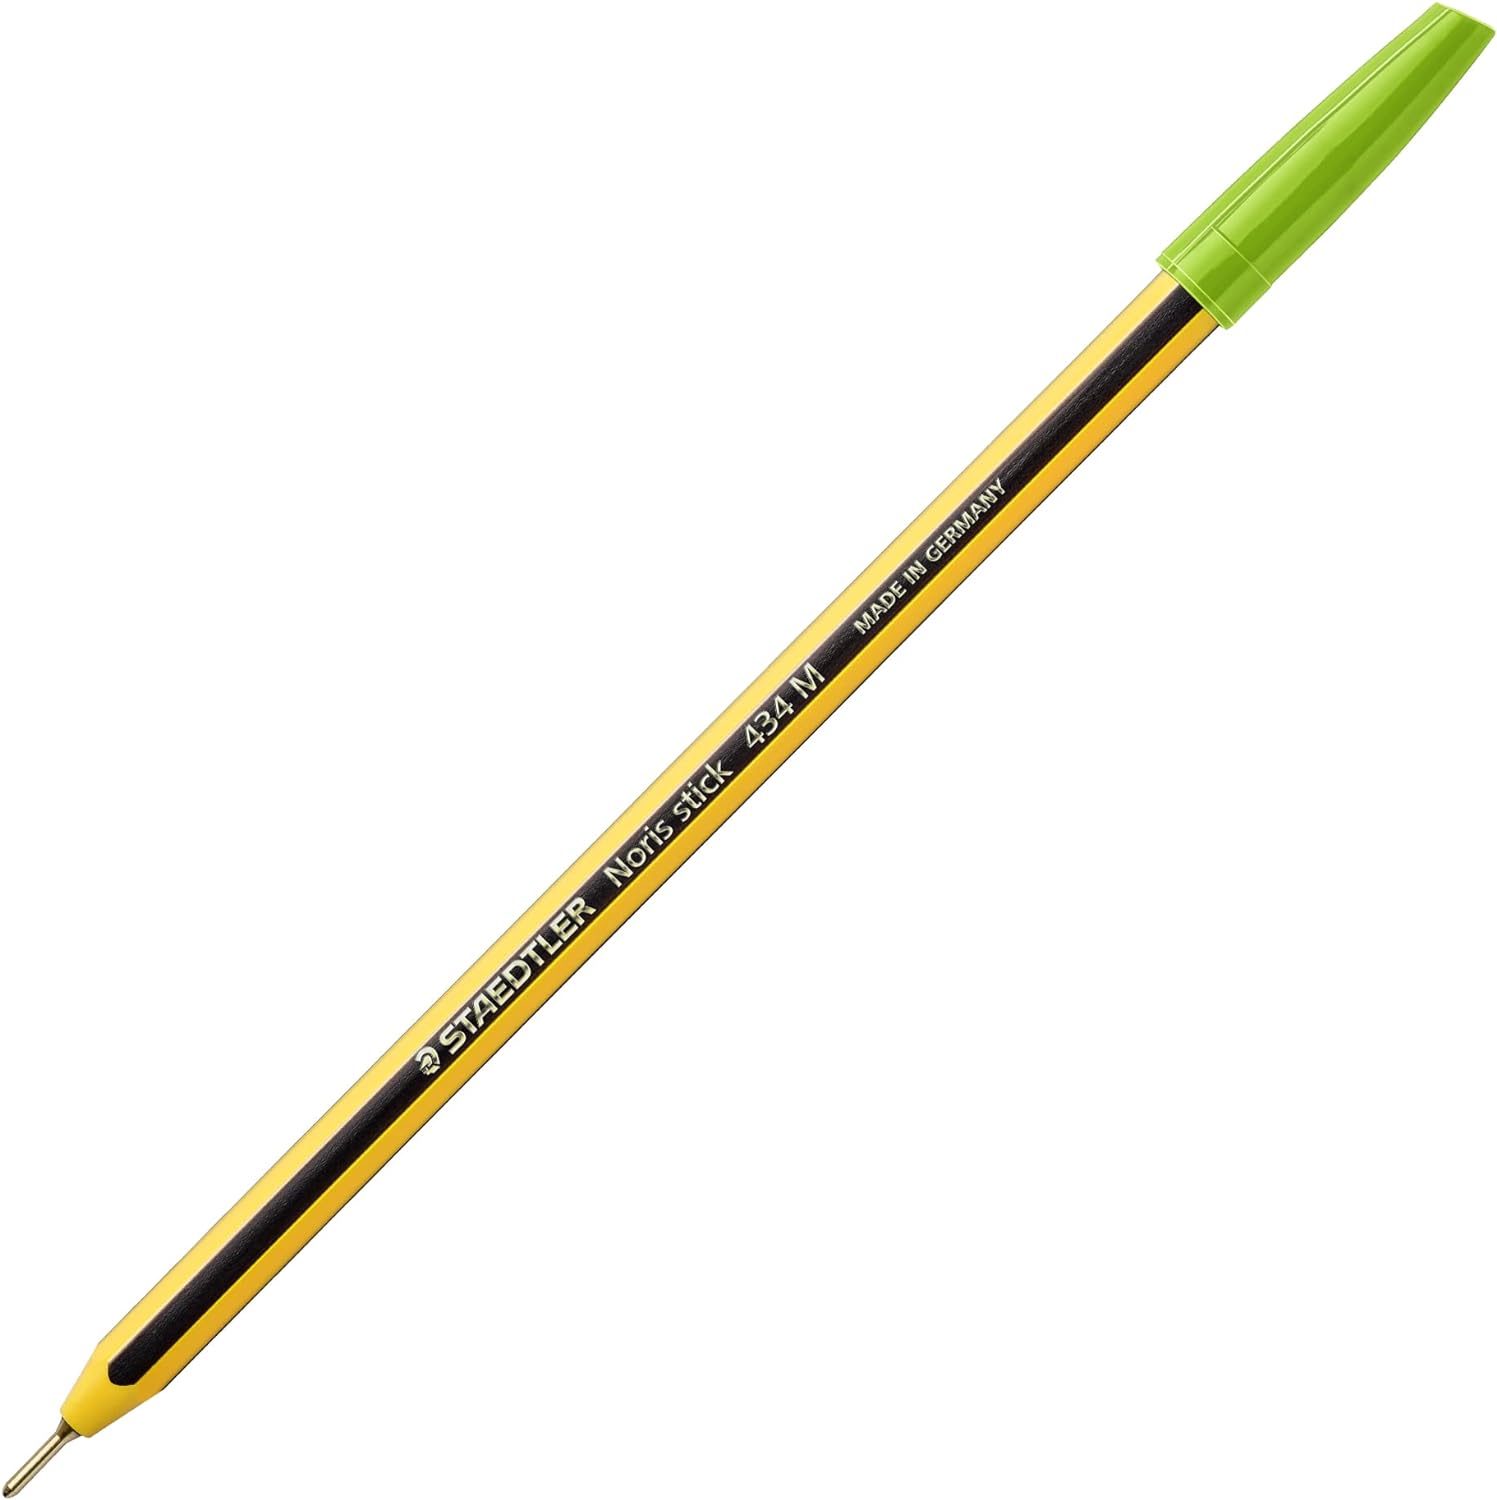 cf. 20 pz. Noris® stick 434 M Penna a sfera colore verde ch.